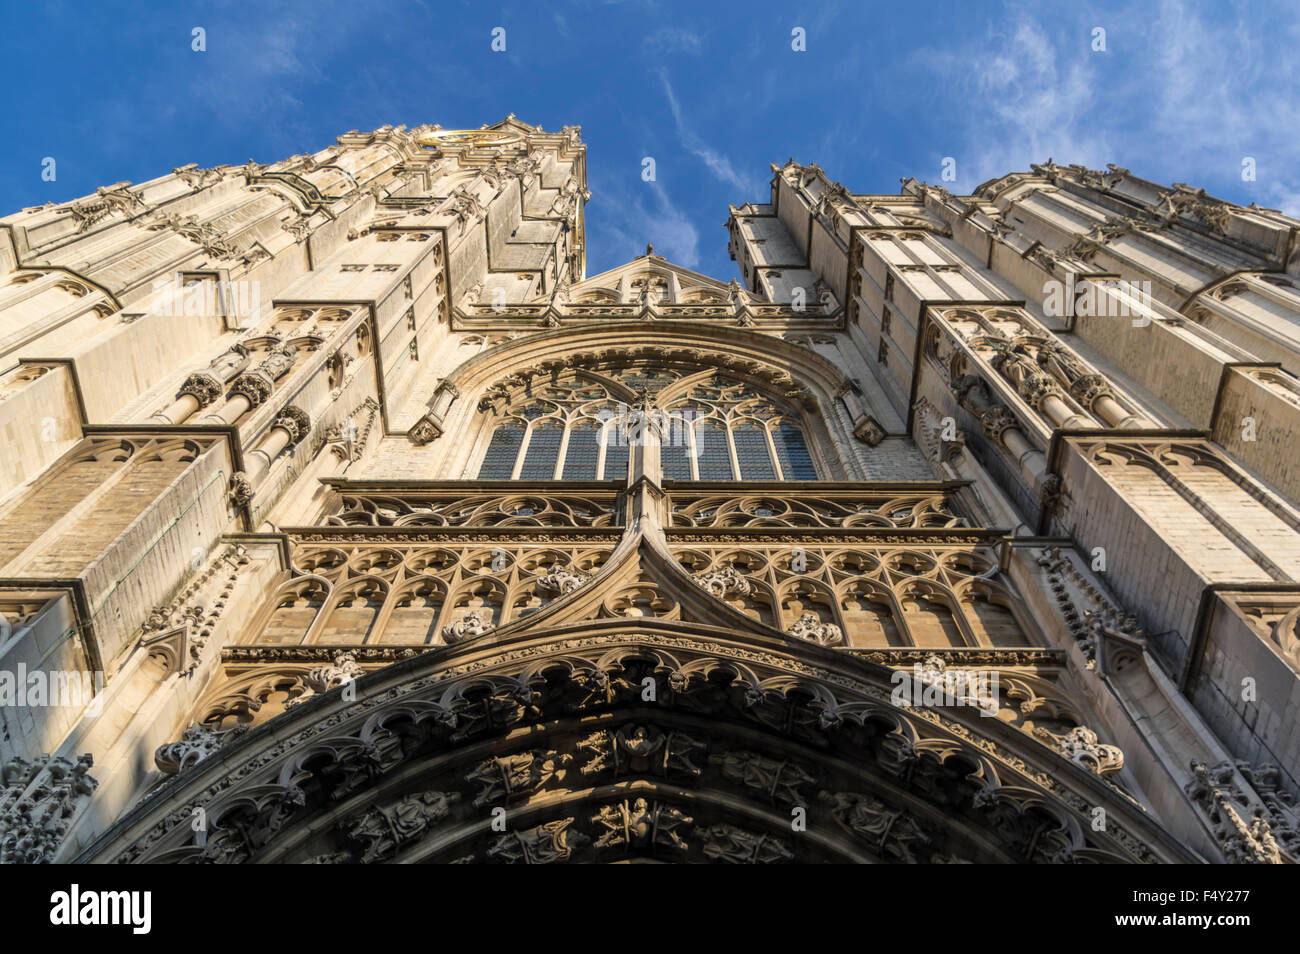 Façade de la cathédrale de Notre Dame (Onze-Lieve-Vrouwekathedraal) à Anvers, la plus grande église gothique en Belgique. Banque D'Images